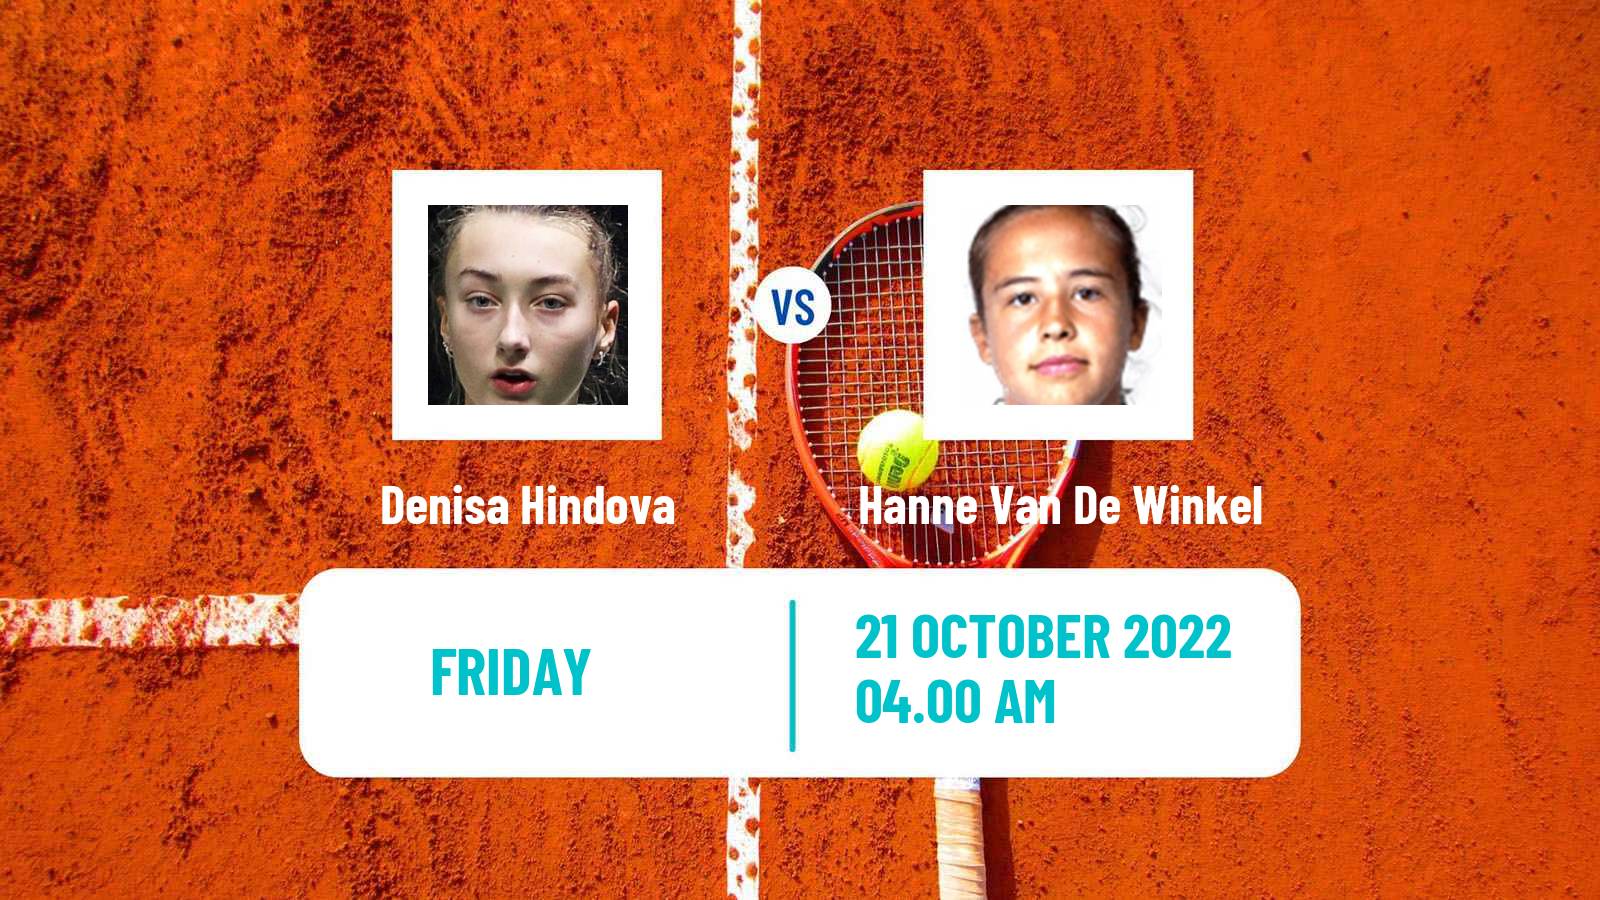 Tennis ITF Tournaments Denisa Hindova - Hanne Van De Winkel